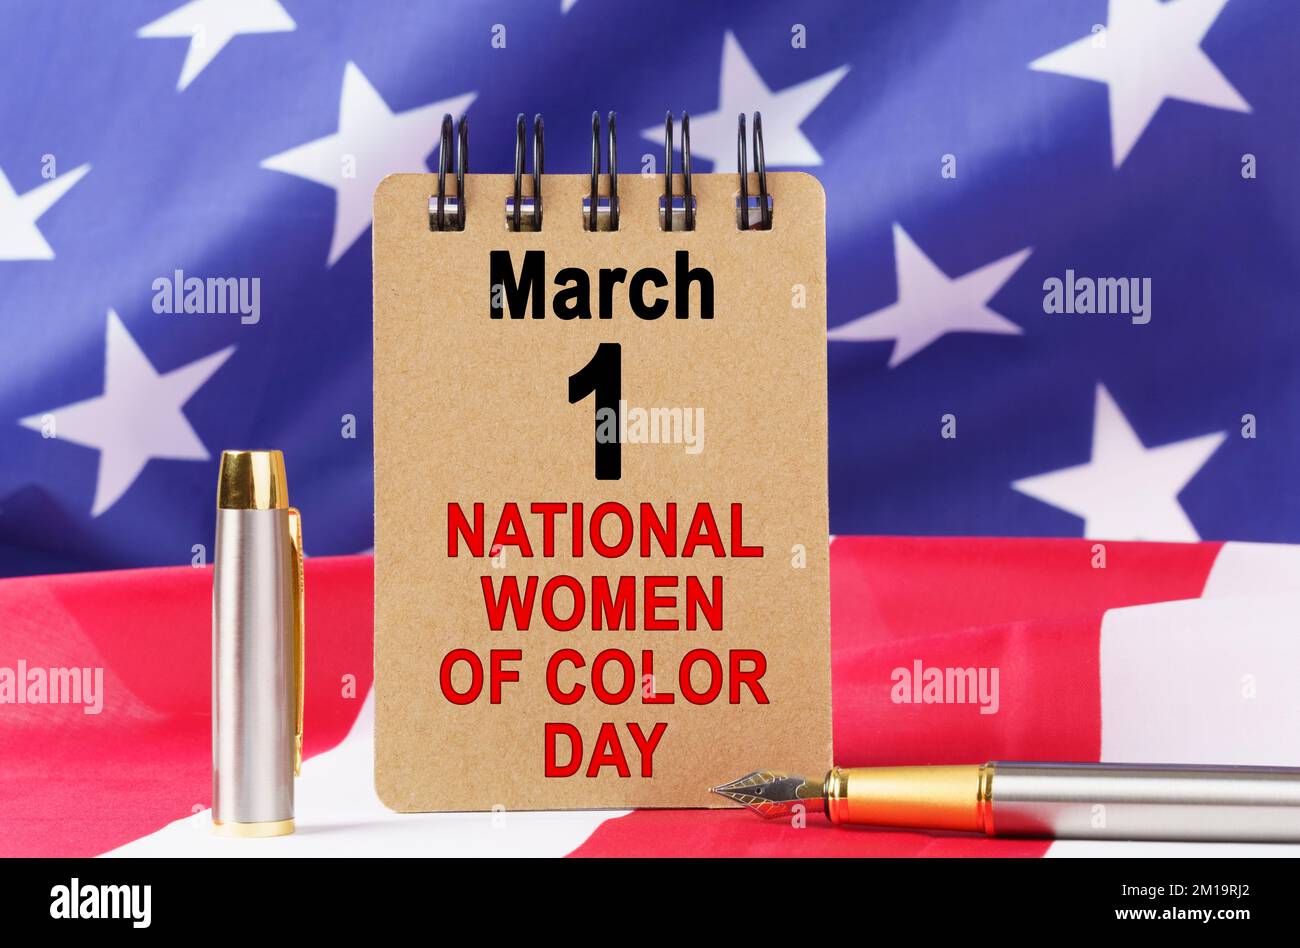 USA-Feiertage. Vor dem Hintergrund der US-Flagge liegt Pappe mit der Inschrift "NATIONAL WOMEN OF COLOUR DAY" Stockfoto